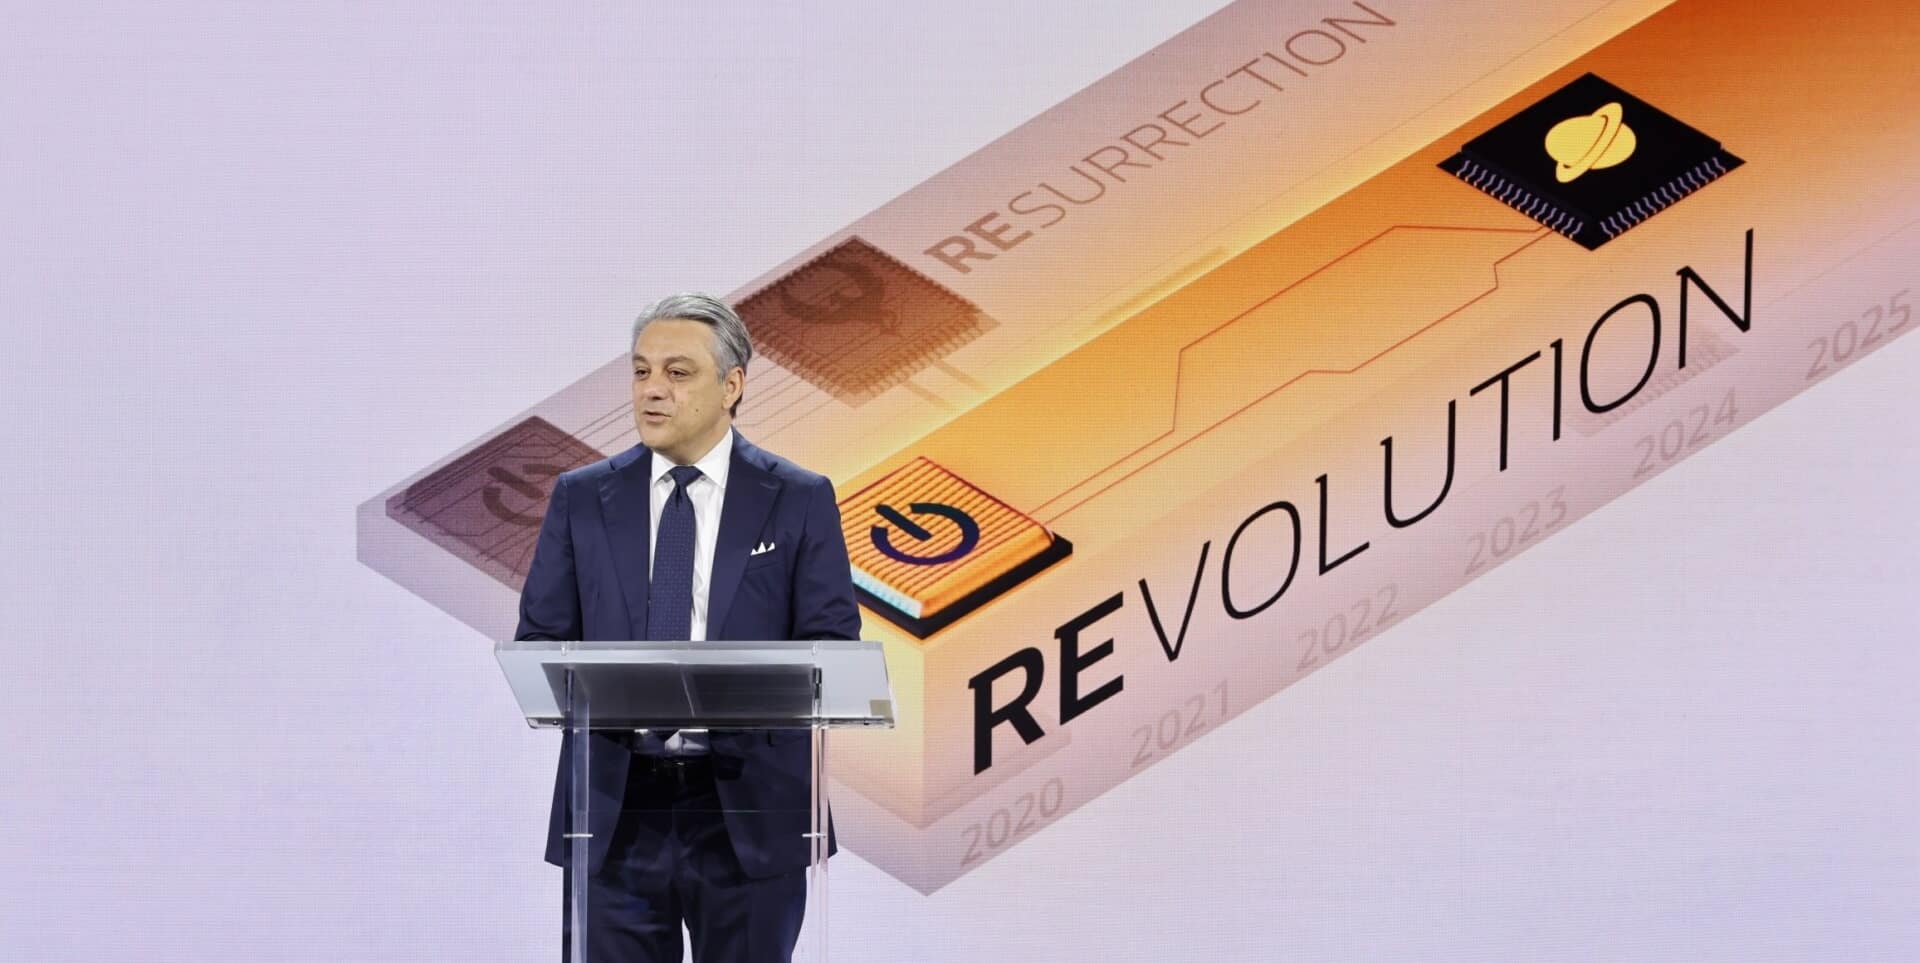 Renault anula la salida a bolsa de Ampere, su filial de vehículos eléctricos, por sus buenos resultados